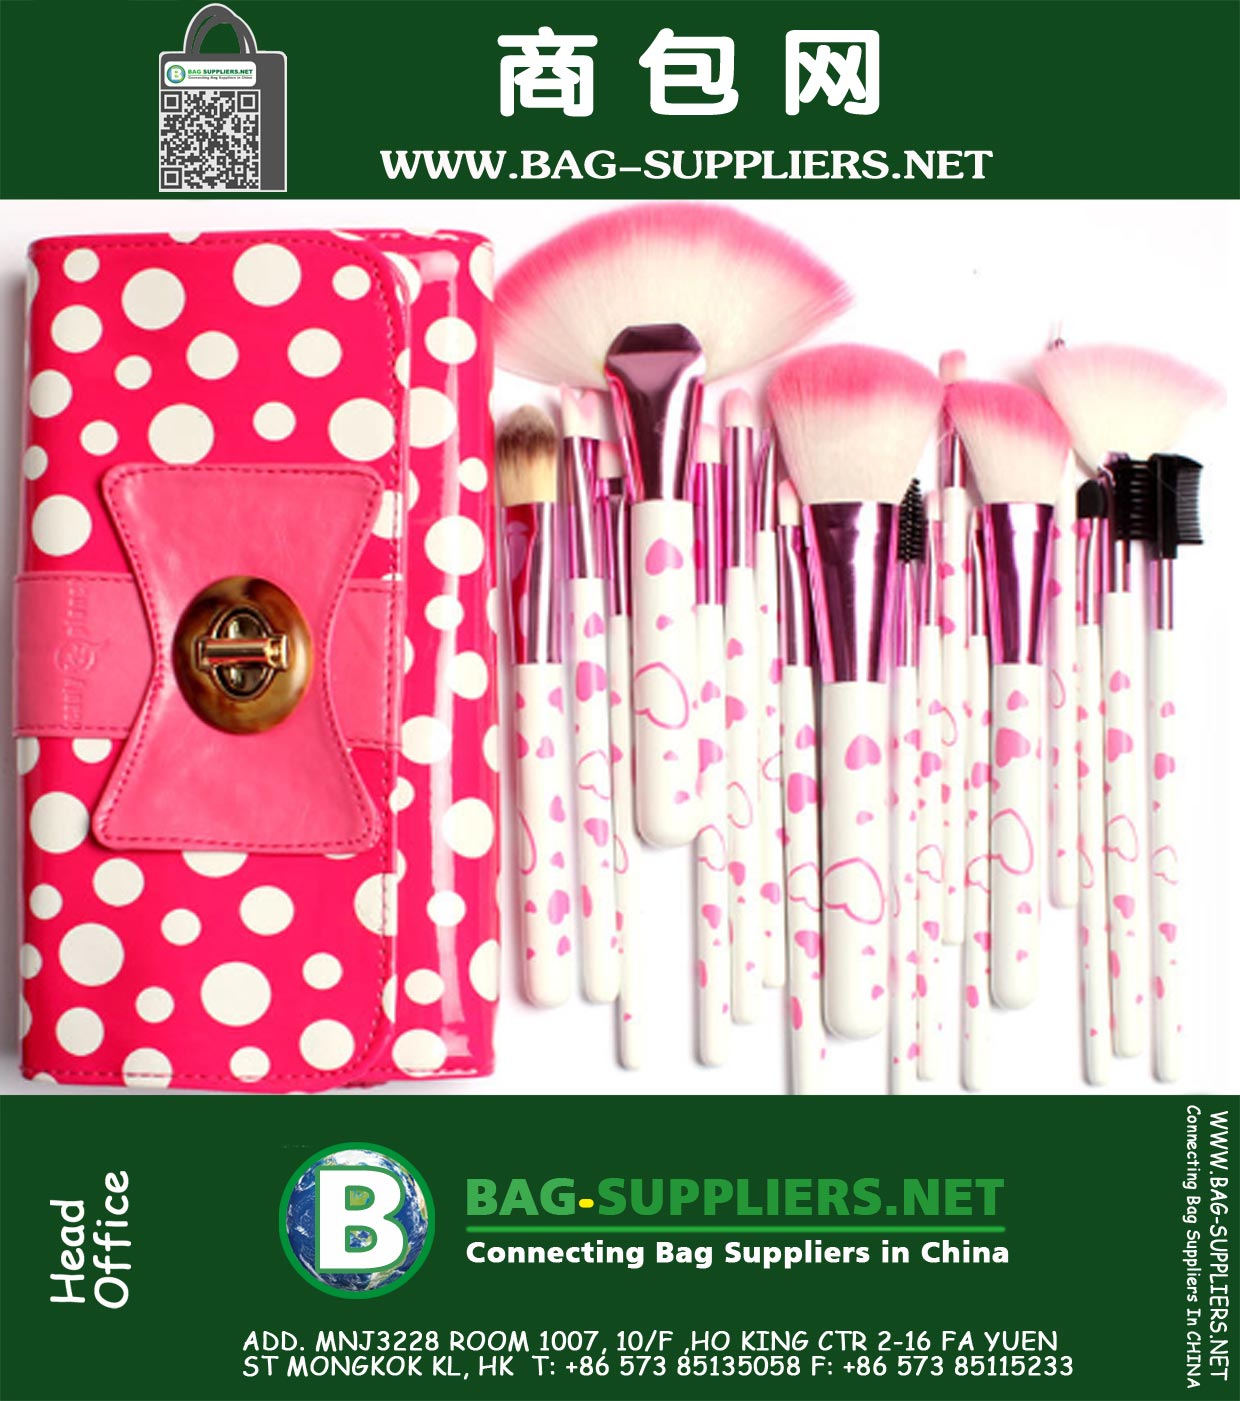 18 Stücke aus Make-up Pinsel und Werkzeuge, in wunderschönen Bogen-Knoten-Tupfen-Rosa-Tasche